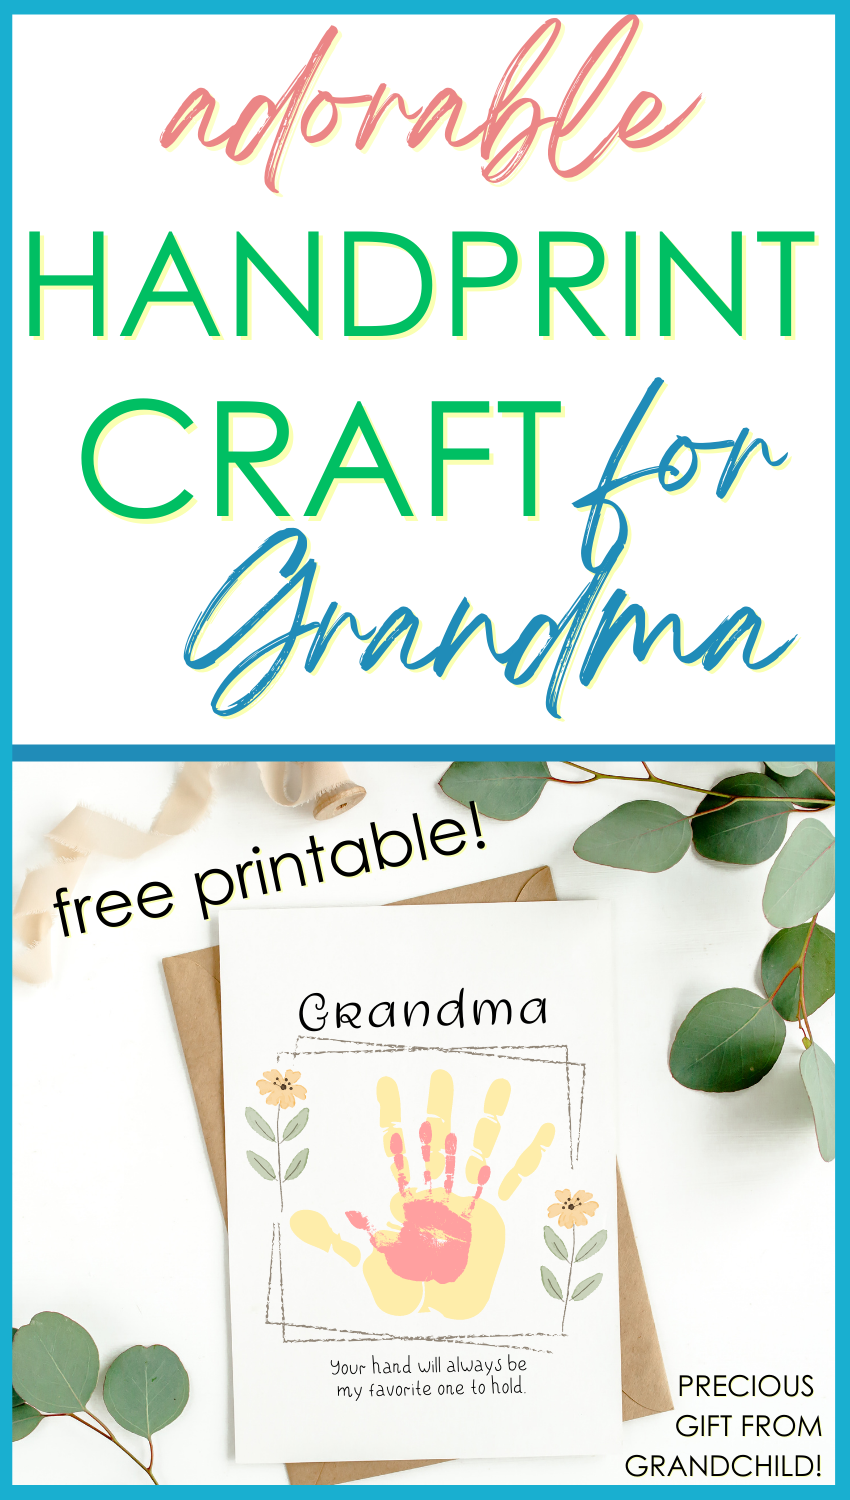 Grandma Gift, Gifts for Grandma From Grandkids, DIY Gift From Kids,  Handprint Art, Mother's Day Gift, Handprint Keepsake 